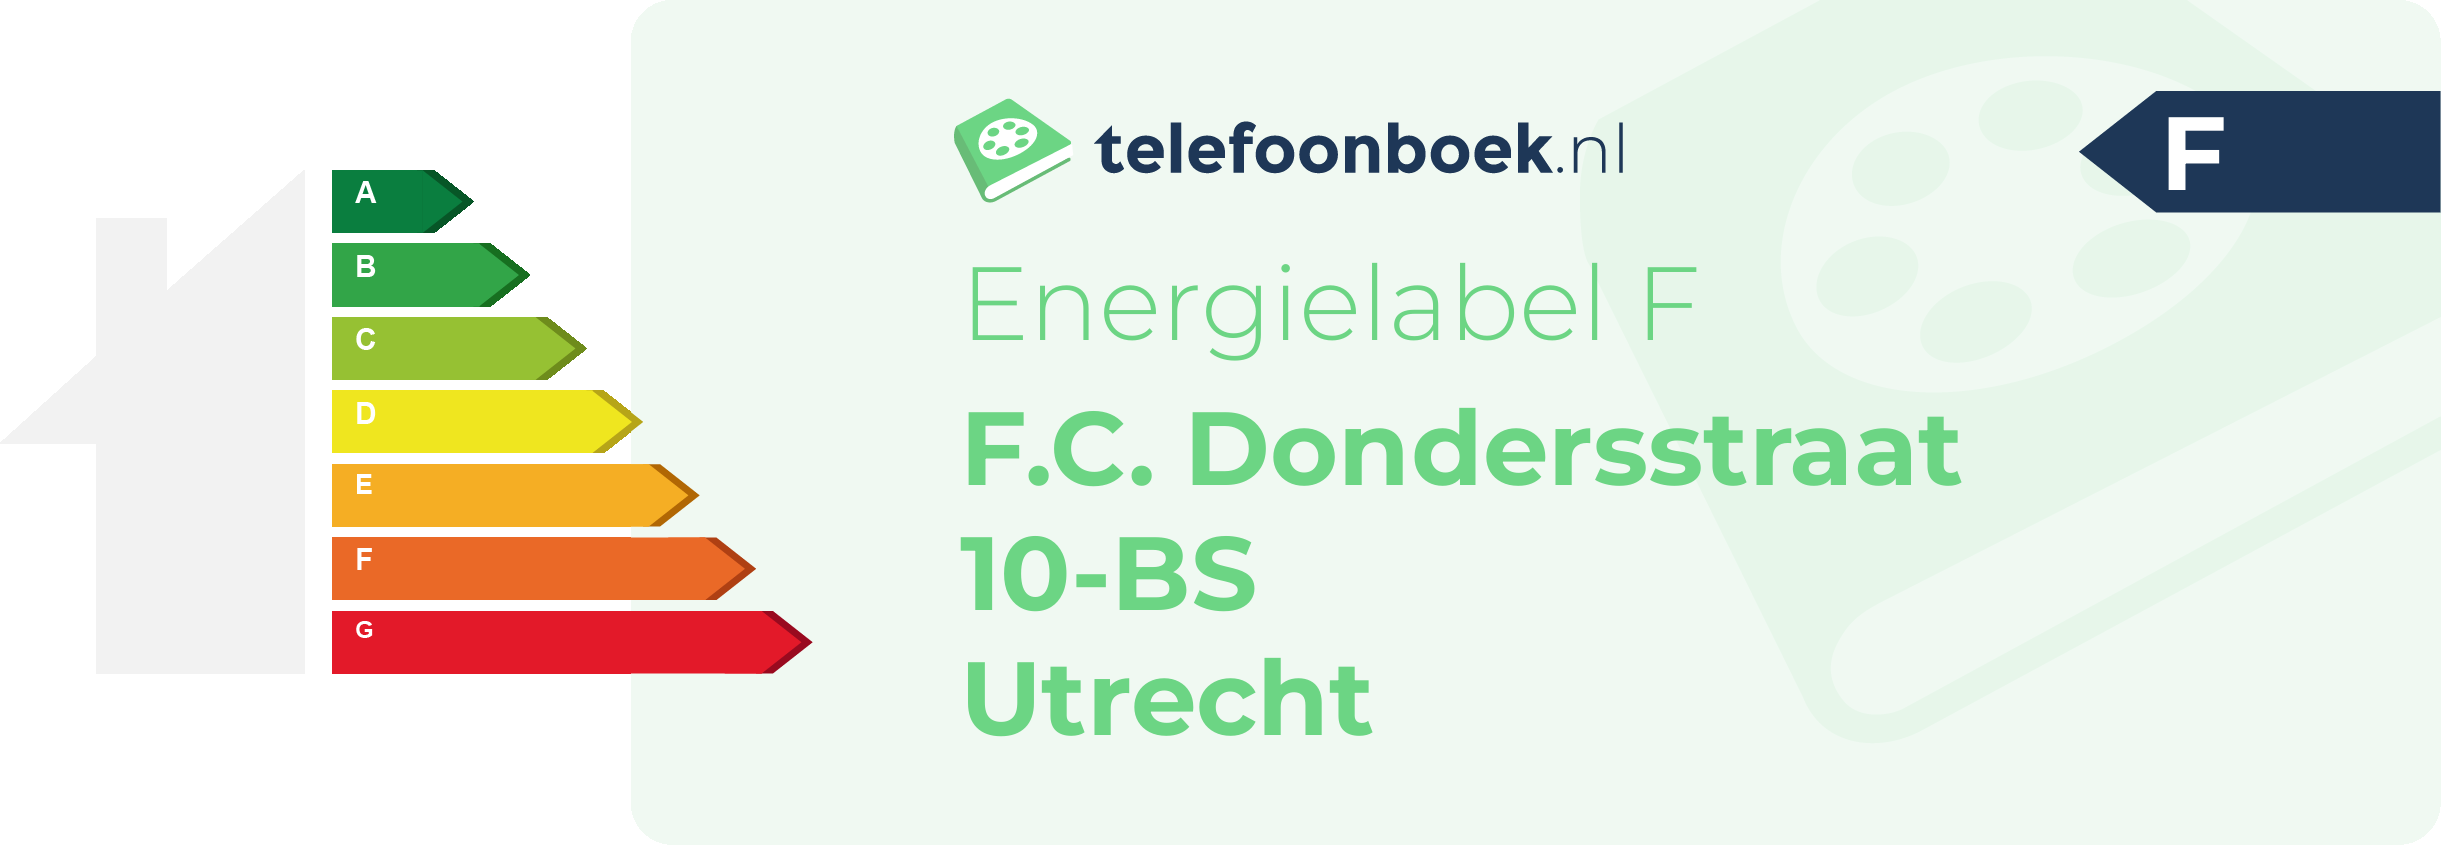 Energielabel F.C. Dondersstraat 10-BS Utrecht